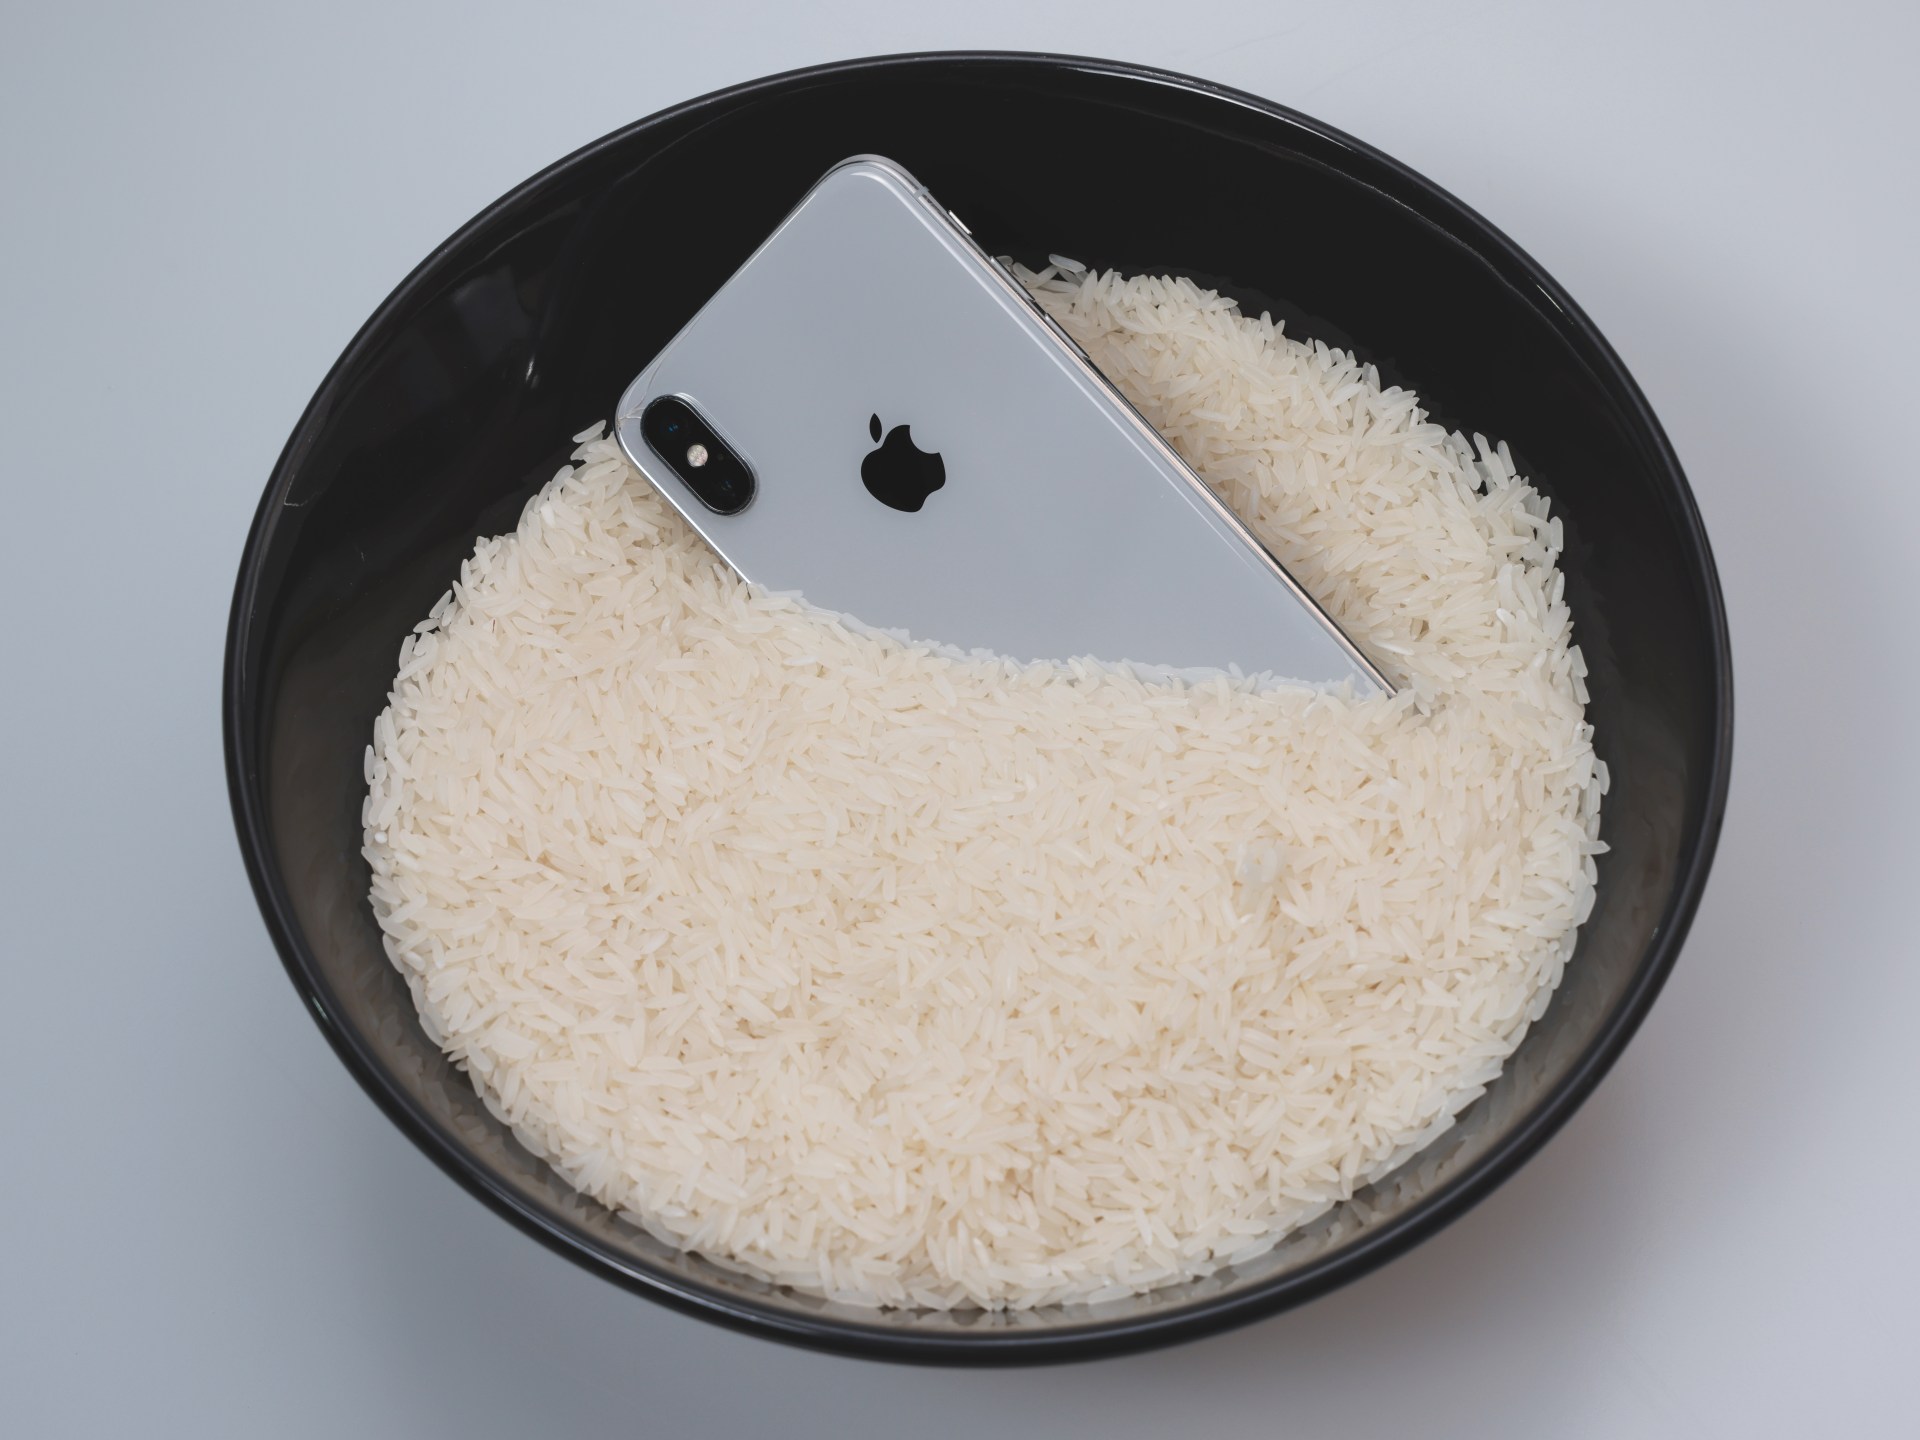 تحذير من آبل: لا تستخدم الأرز لتجفيف الآيفون من الماء | تكنولوجيا – البوكس نيوز